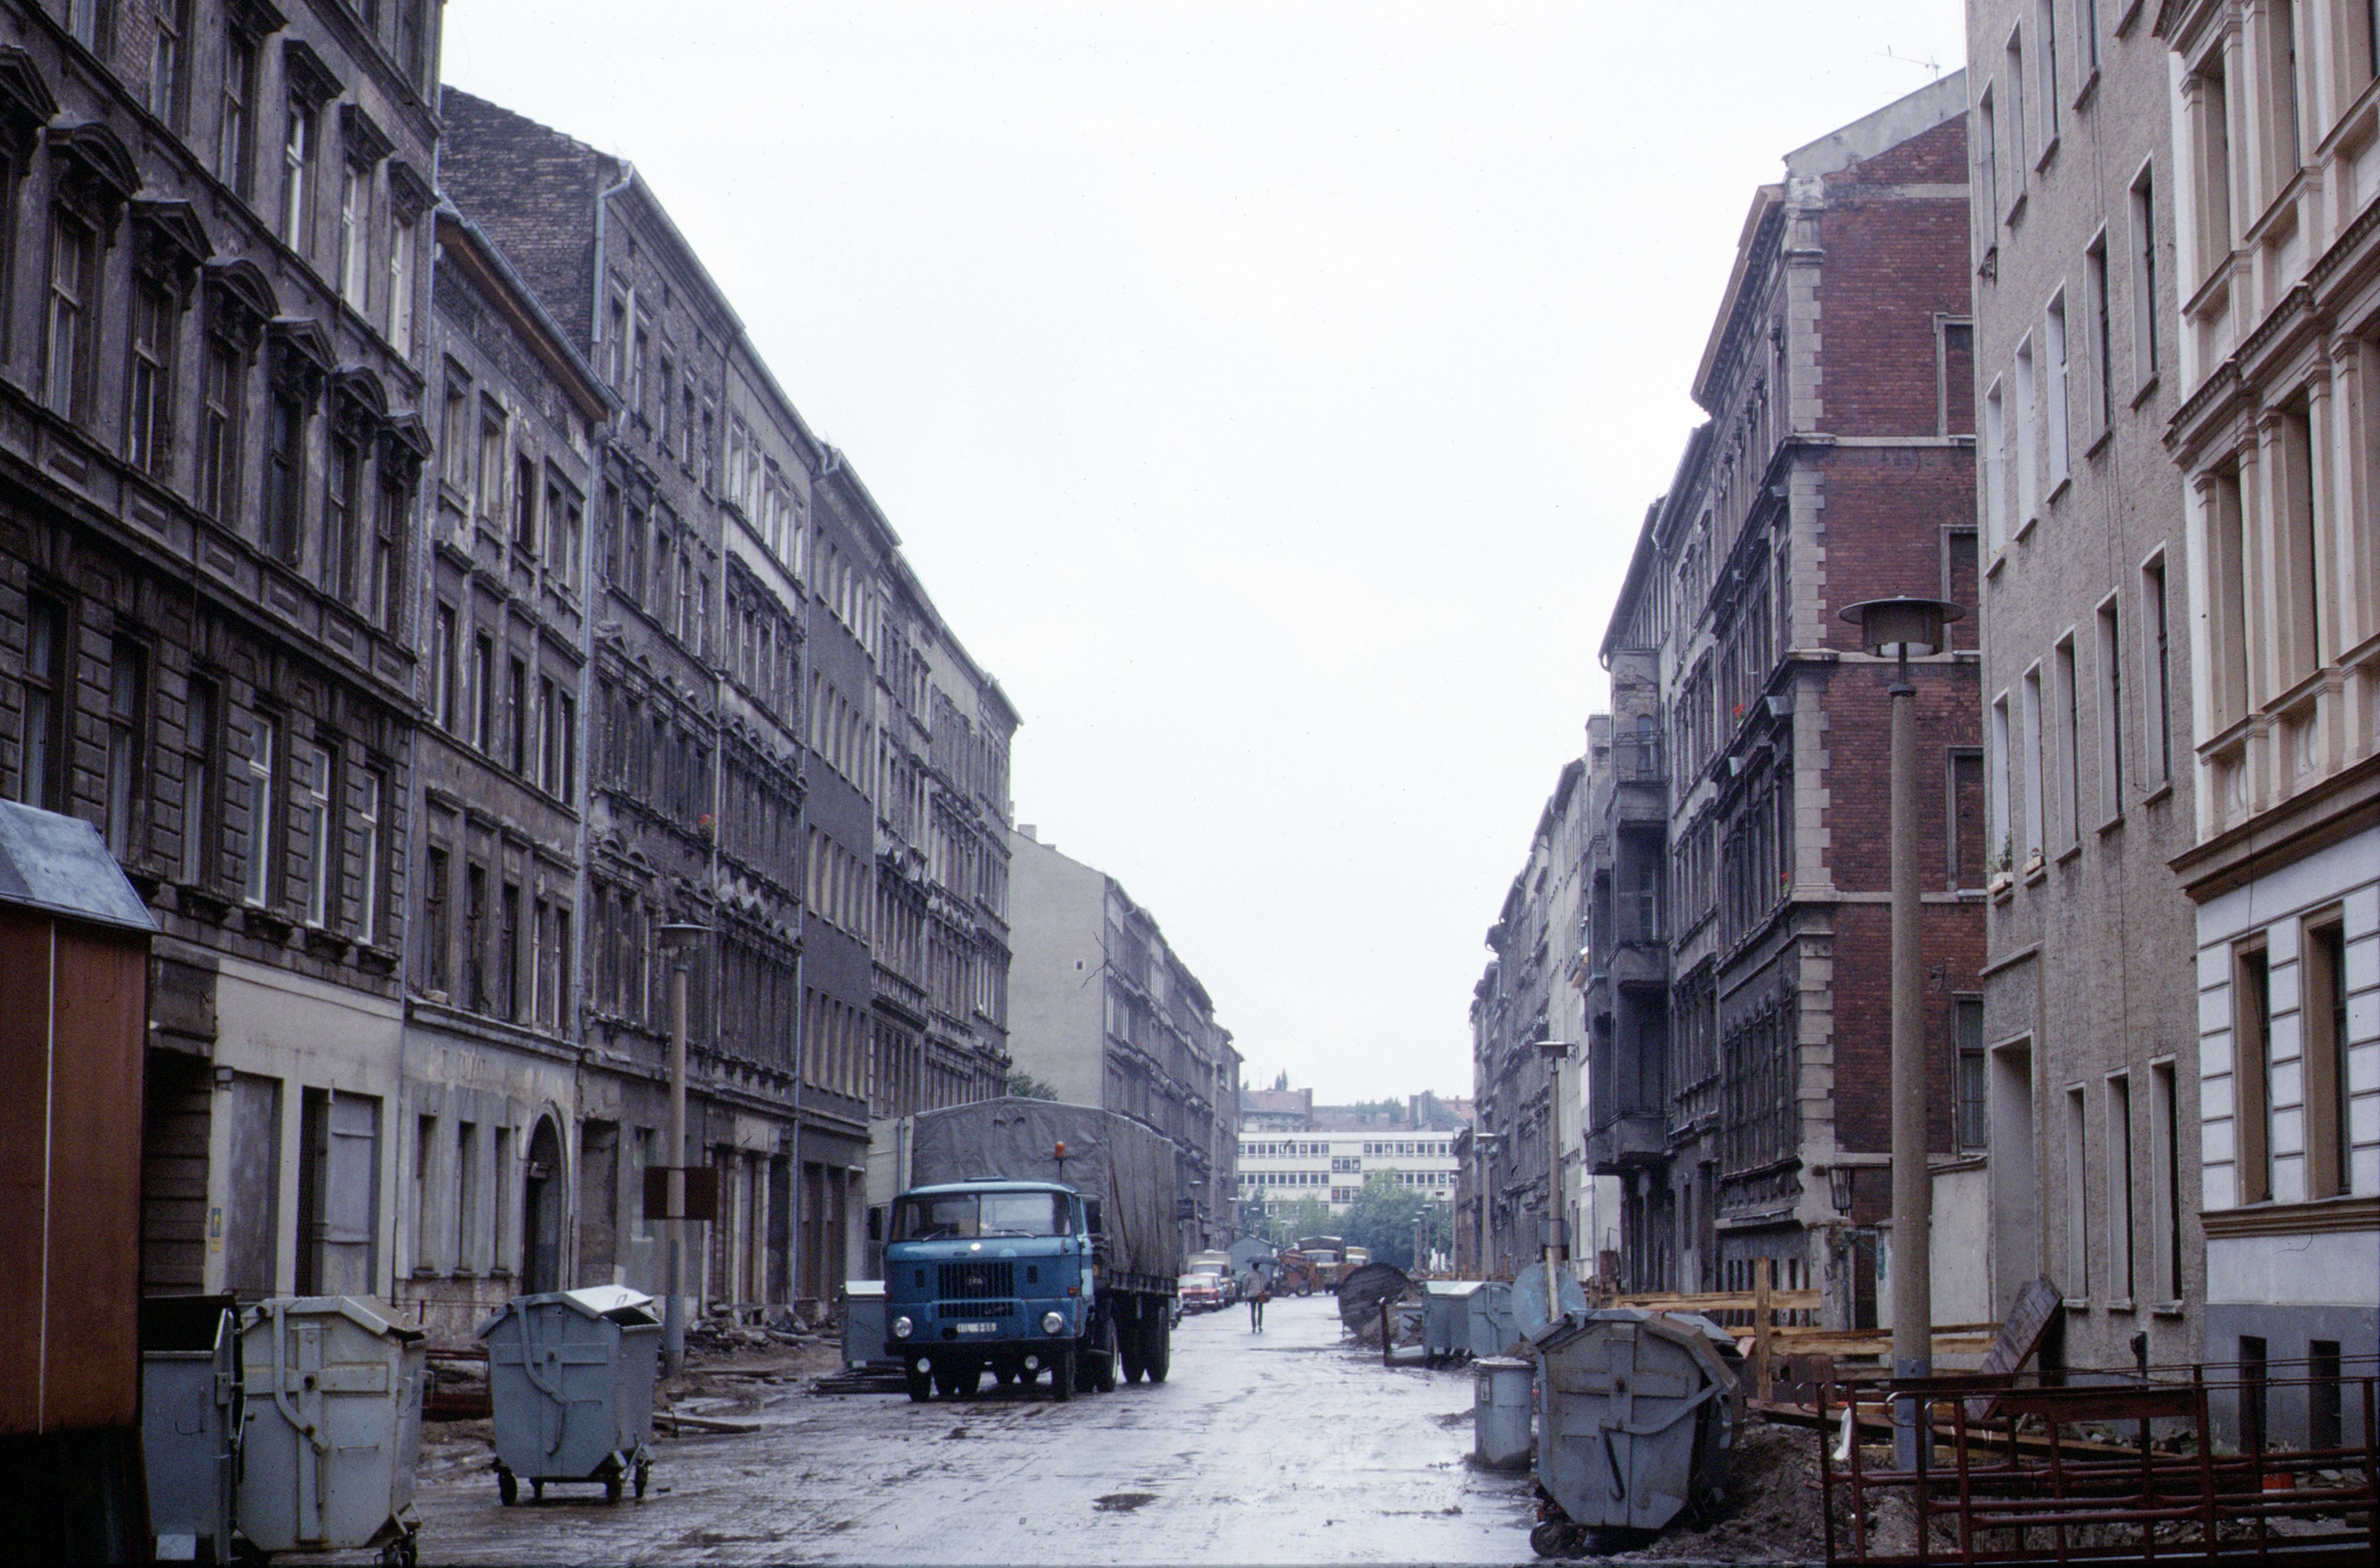 Typical street scene: East Berlin in 1988